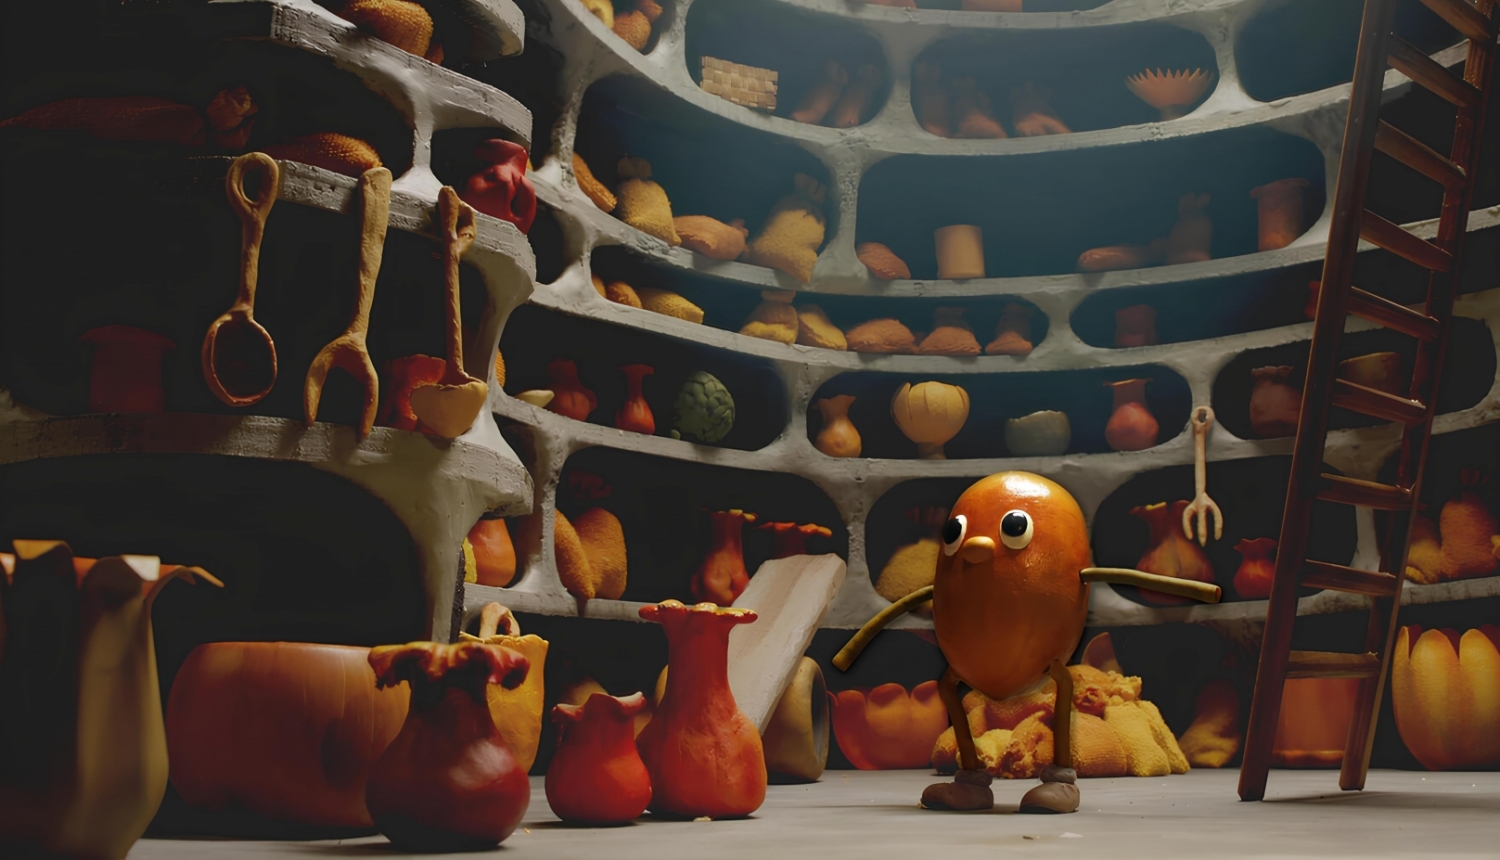 Margaritas Stārastes veidotās dekorācijas animācijas filmai